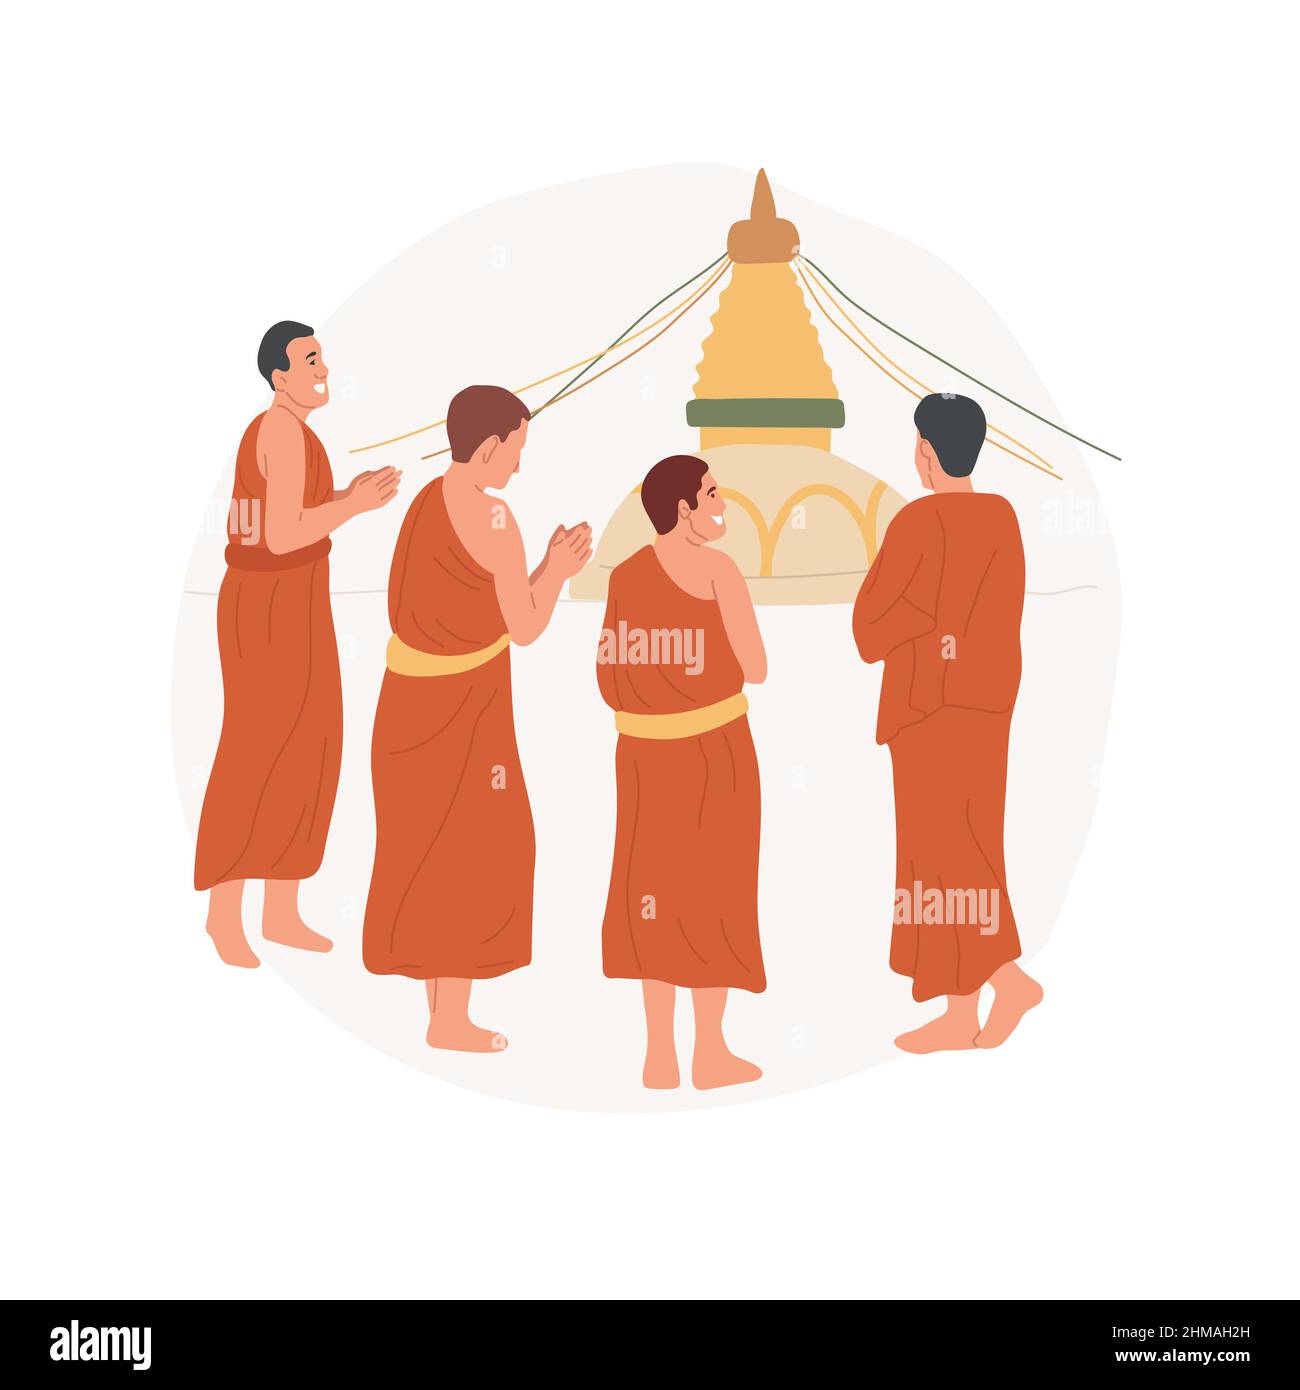 Pèlerinage de groupe concept abstrait illustration du vecteur. Groupe de gens bouddhistes heureux faisant le pèlerinage ensemble, se rendre à l'endroit Saint, rituel religieux, pèlerins marchant métaphore abstraite. Illustration de Vecteur